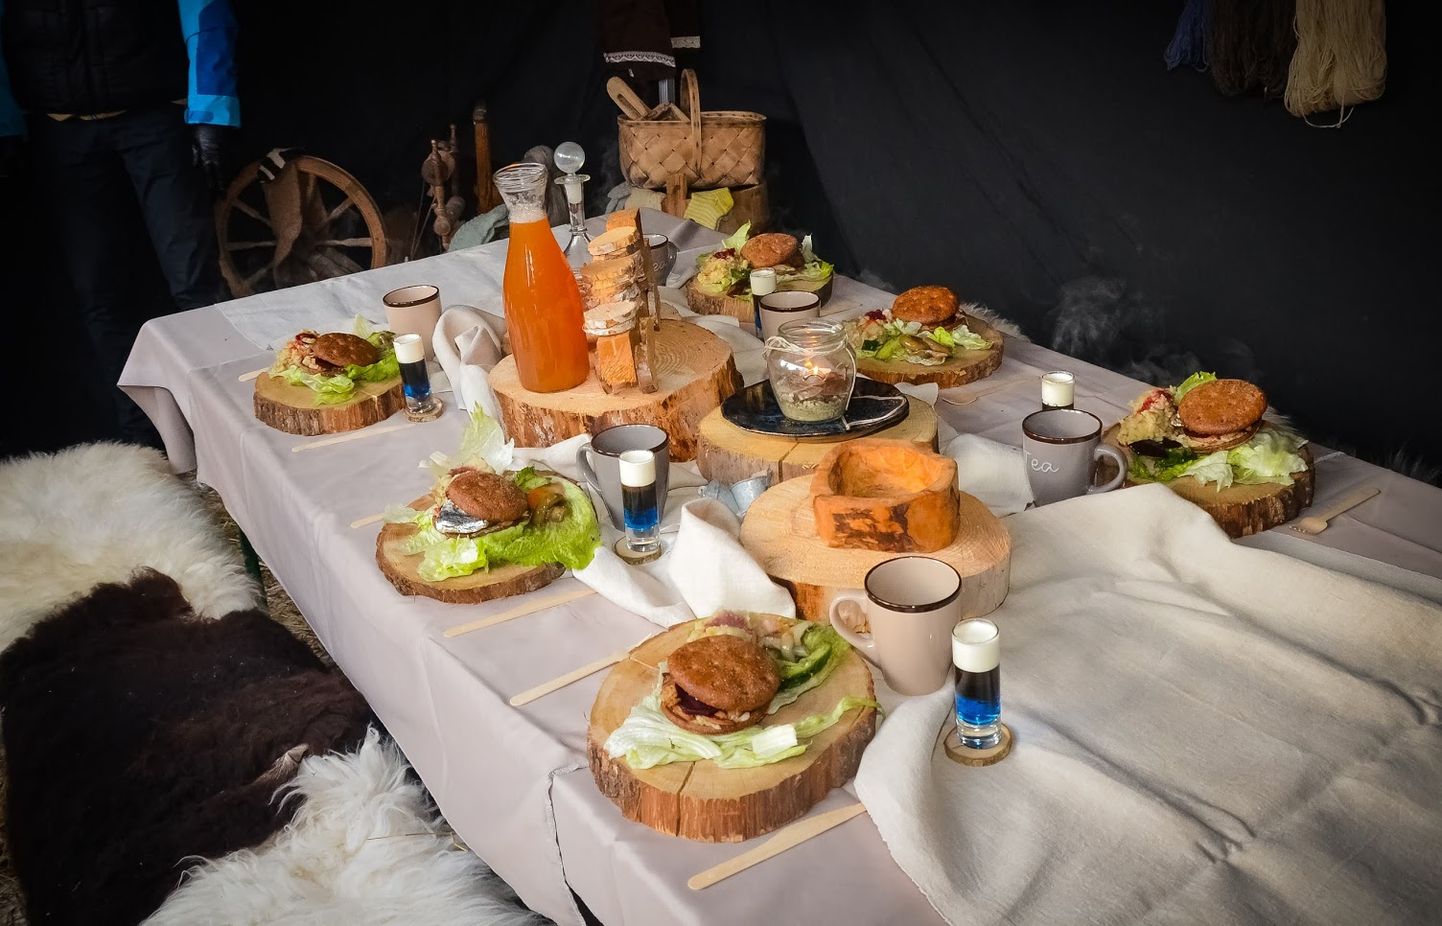 Fantaasiavoorus pakkusid pärnakad tervitusnapsiks rahvuslikes värvides minikokteili ja söögiks burgerit Eesti moodi.